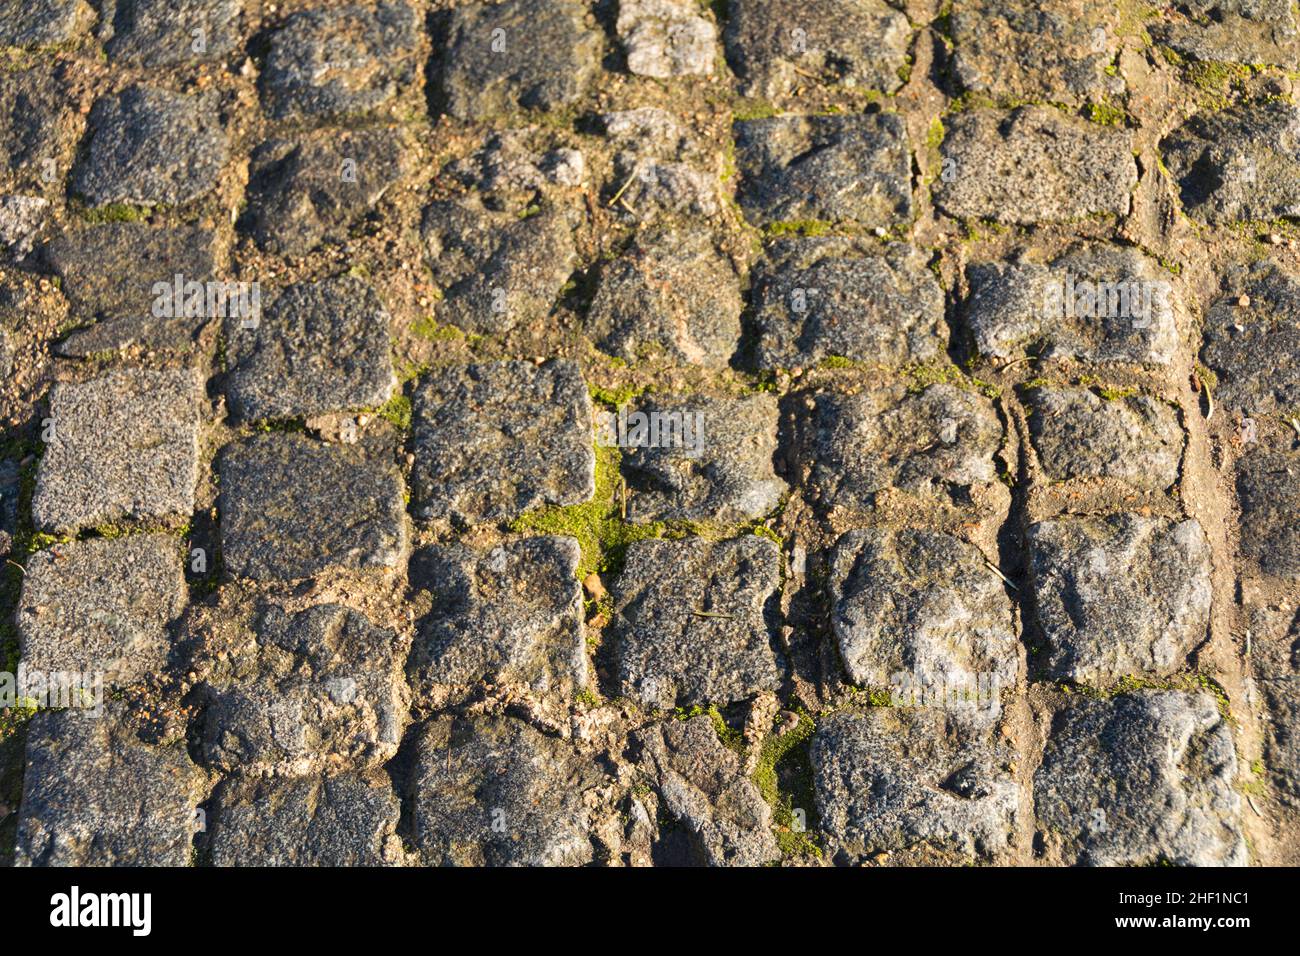 Primer plano de piedras de pavimentación desgastadas cubiertas de musgo Foto de stock